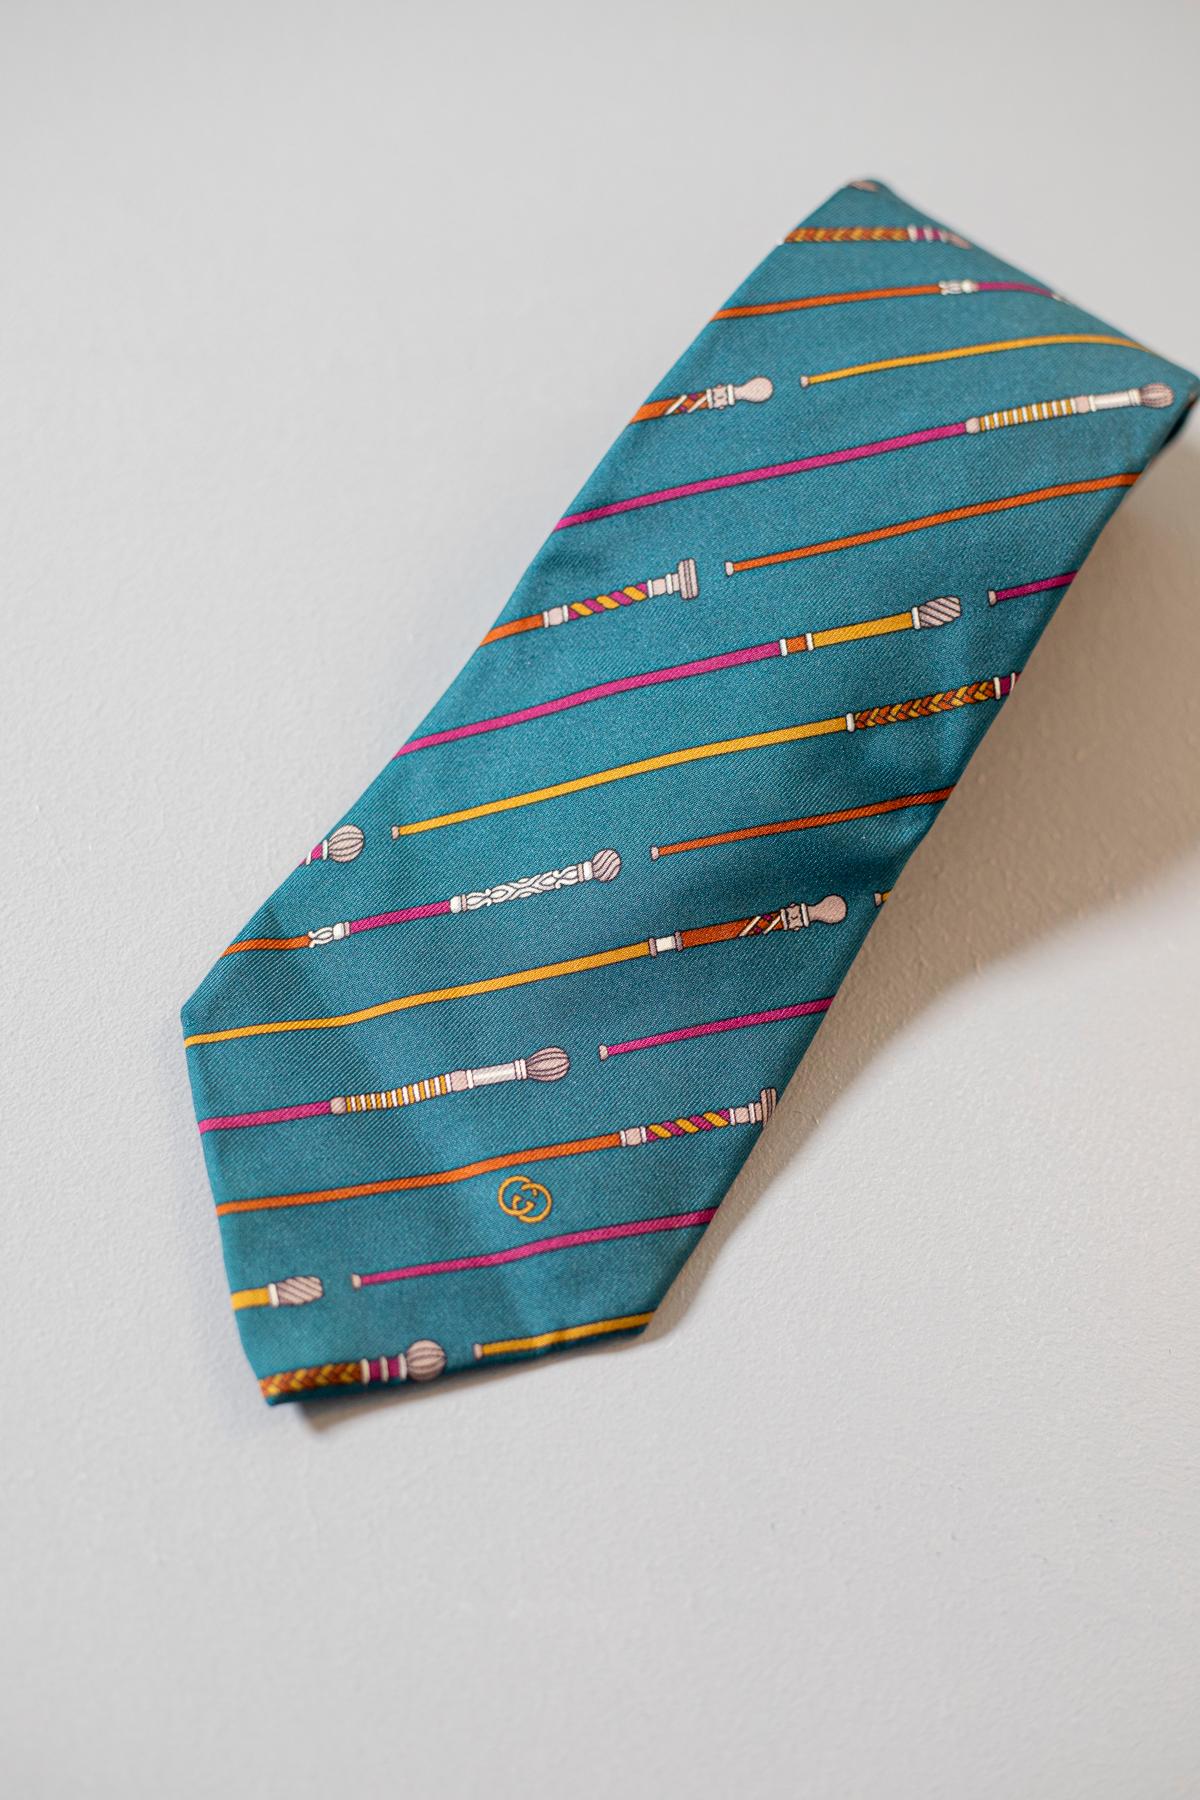 Conçue par Gucci, cette cravate est entièrement réalisée en soie. Cet accessoire est simple mais élégant et présente des bâtons de marche colorés sur un fond vert quetzal. Cette cravate est parfaite pour toutes les occasions, car elle est élégante